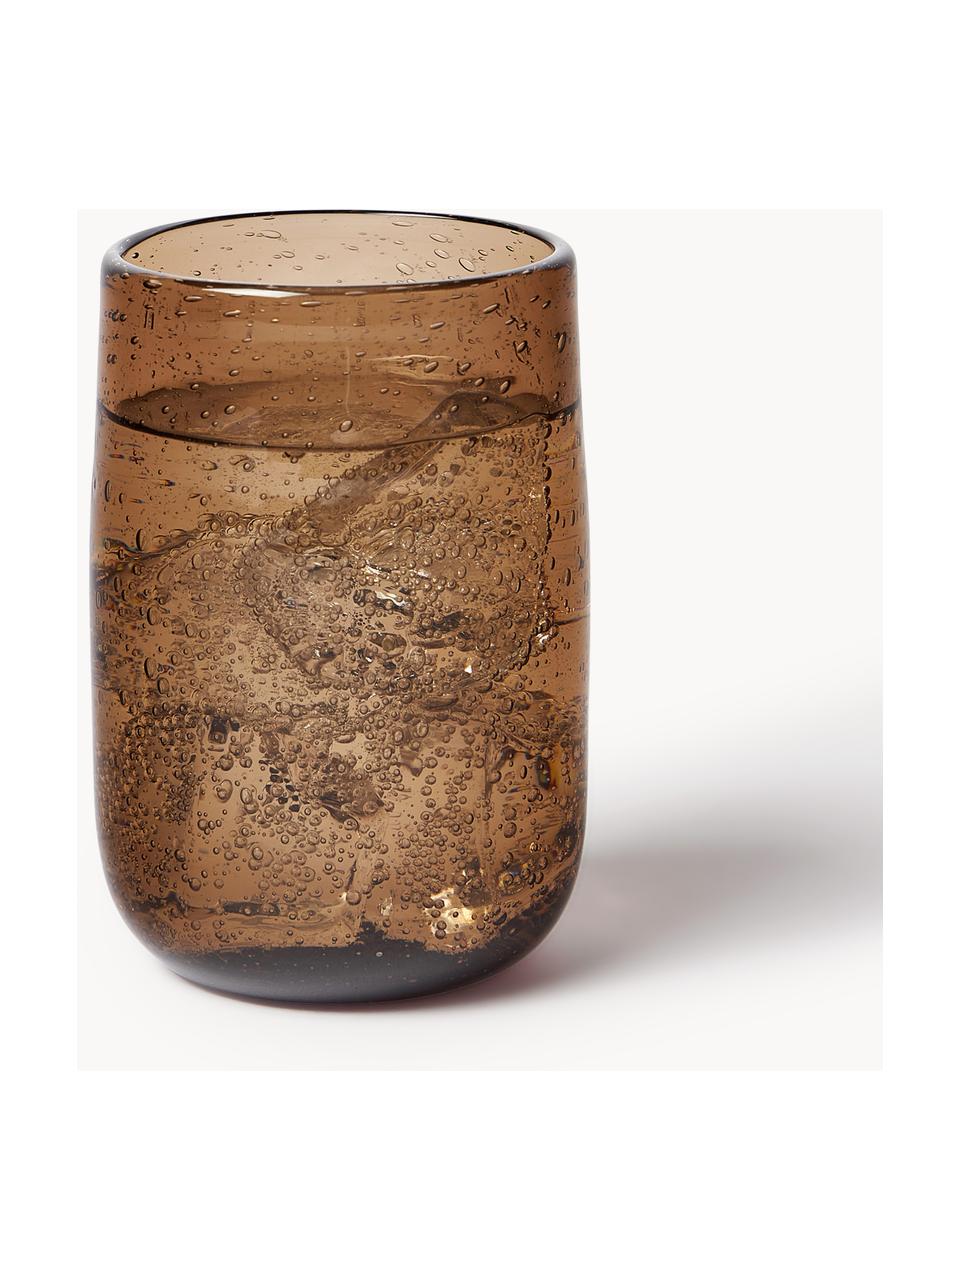 Vasos artesanales con burbujas de aire Bari, 6 uds., Vidrio, Marrón, Ø 7 x Al 11 cm, 330 ml